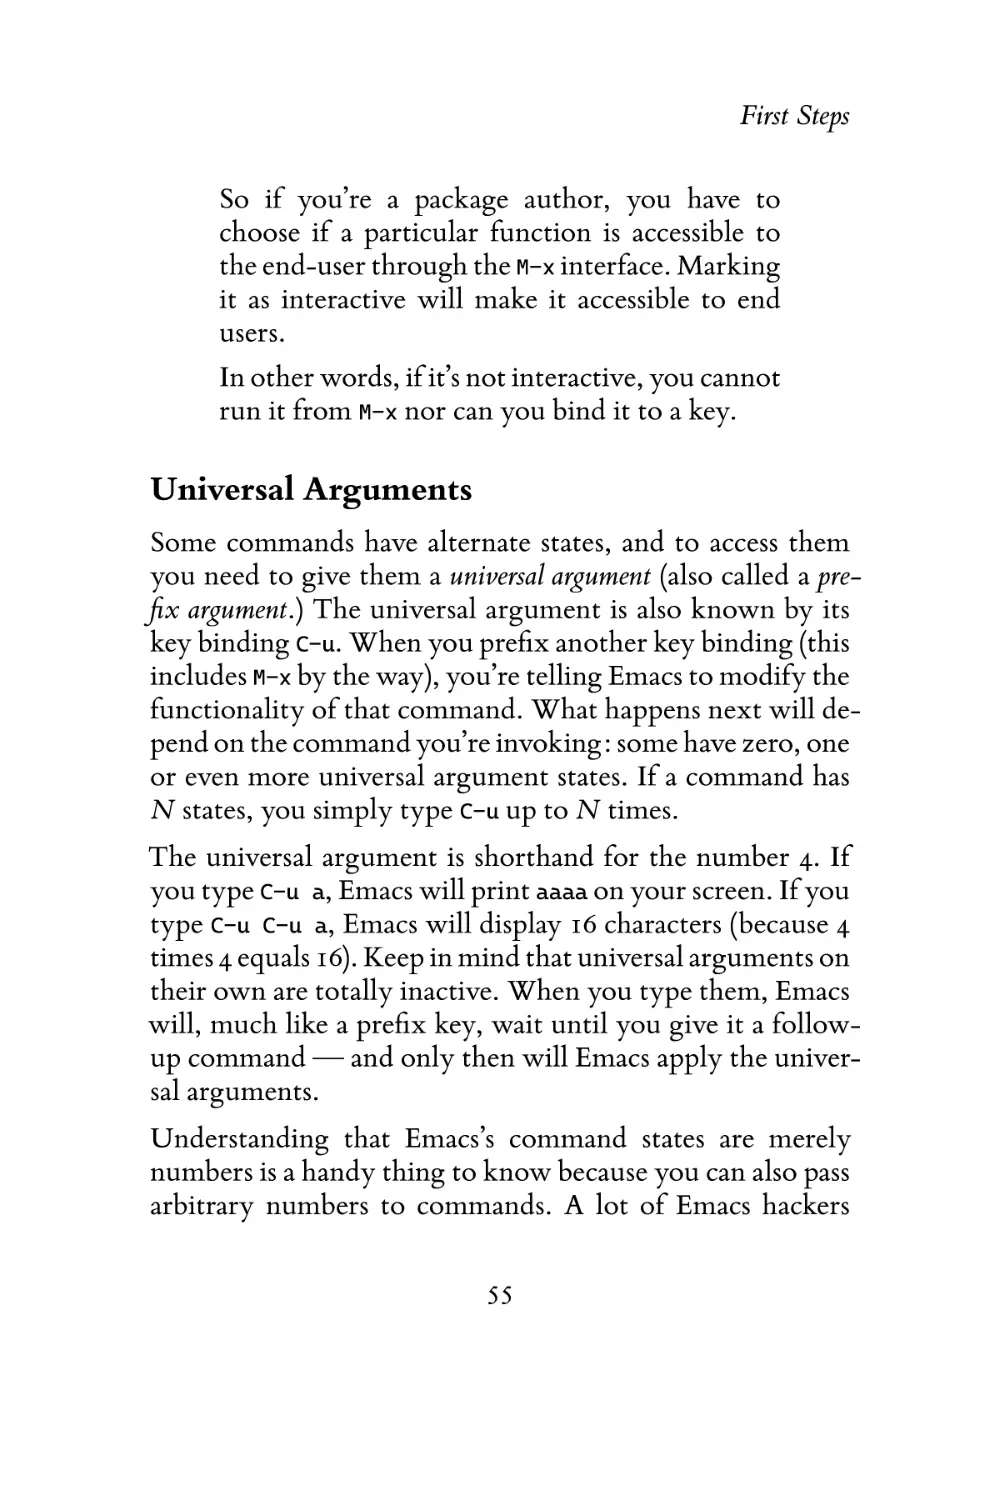 Universal Arguments